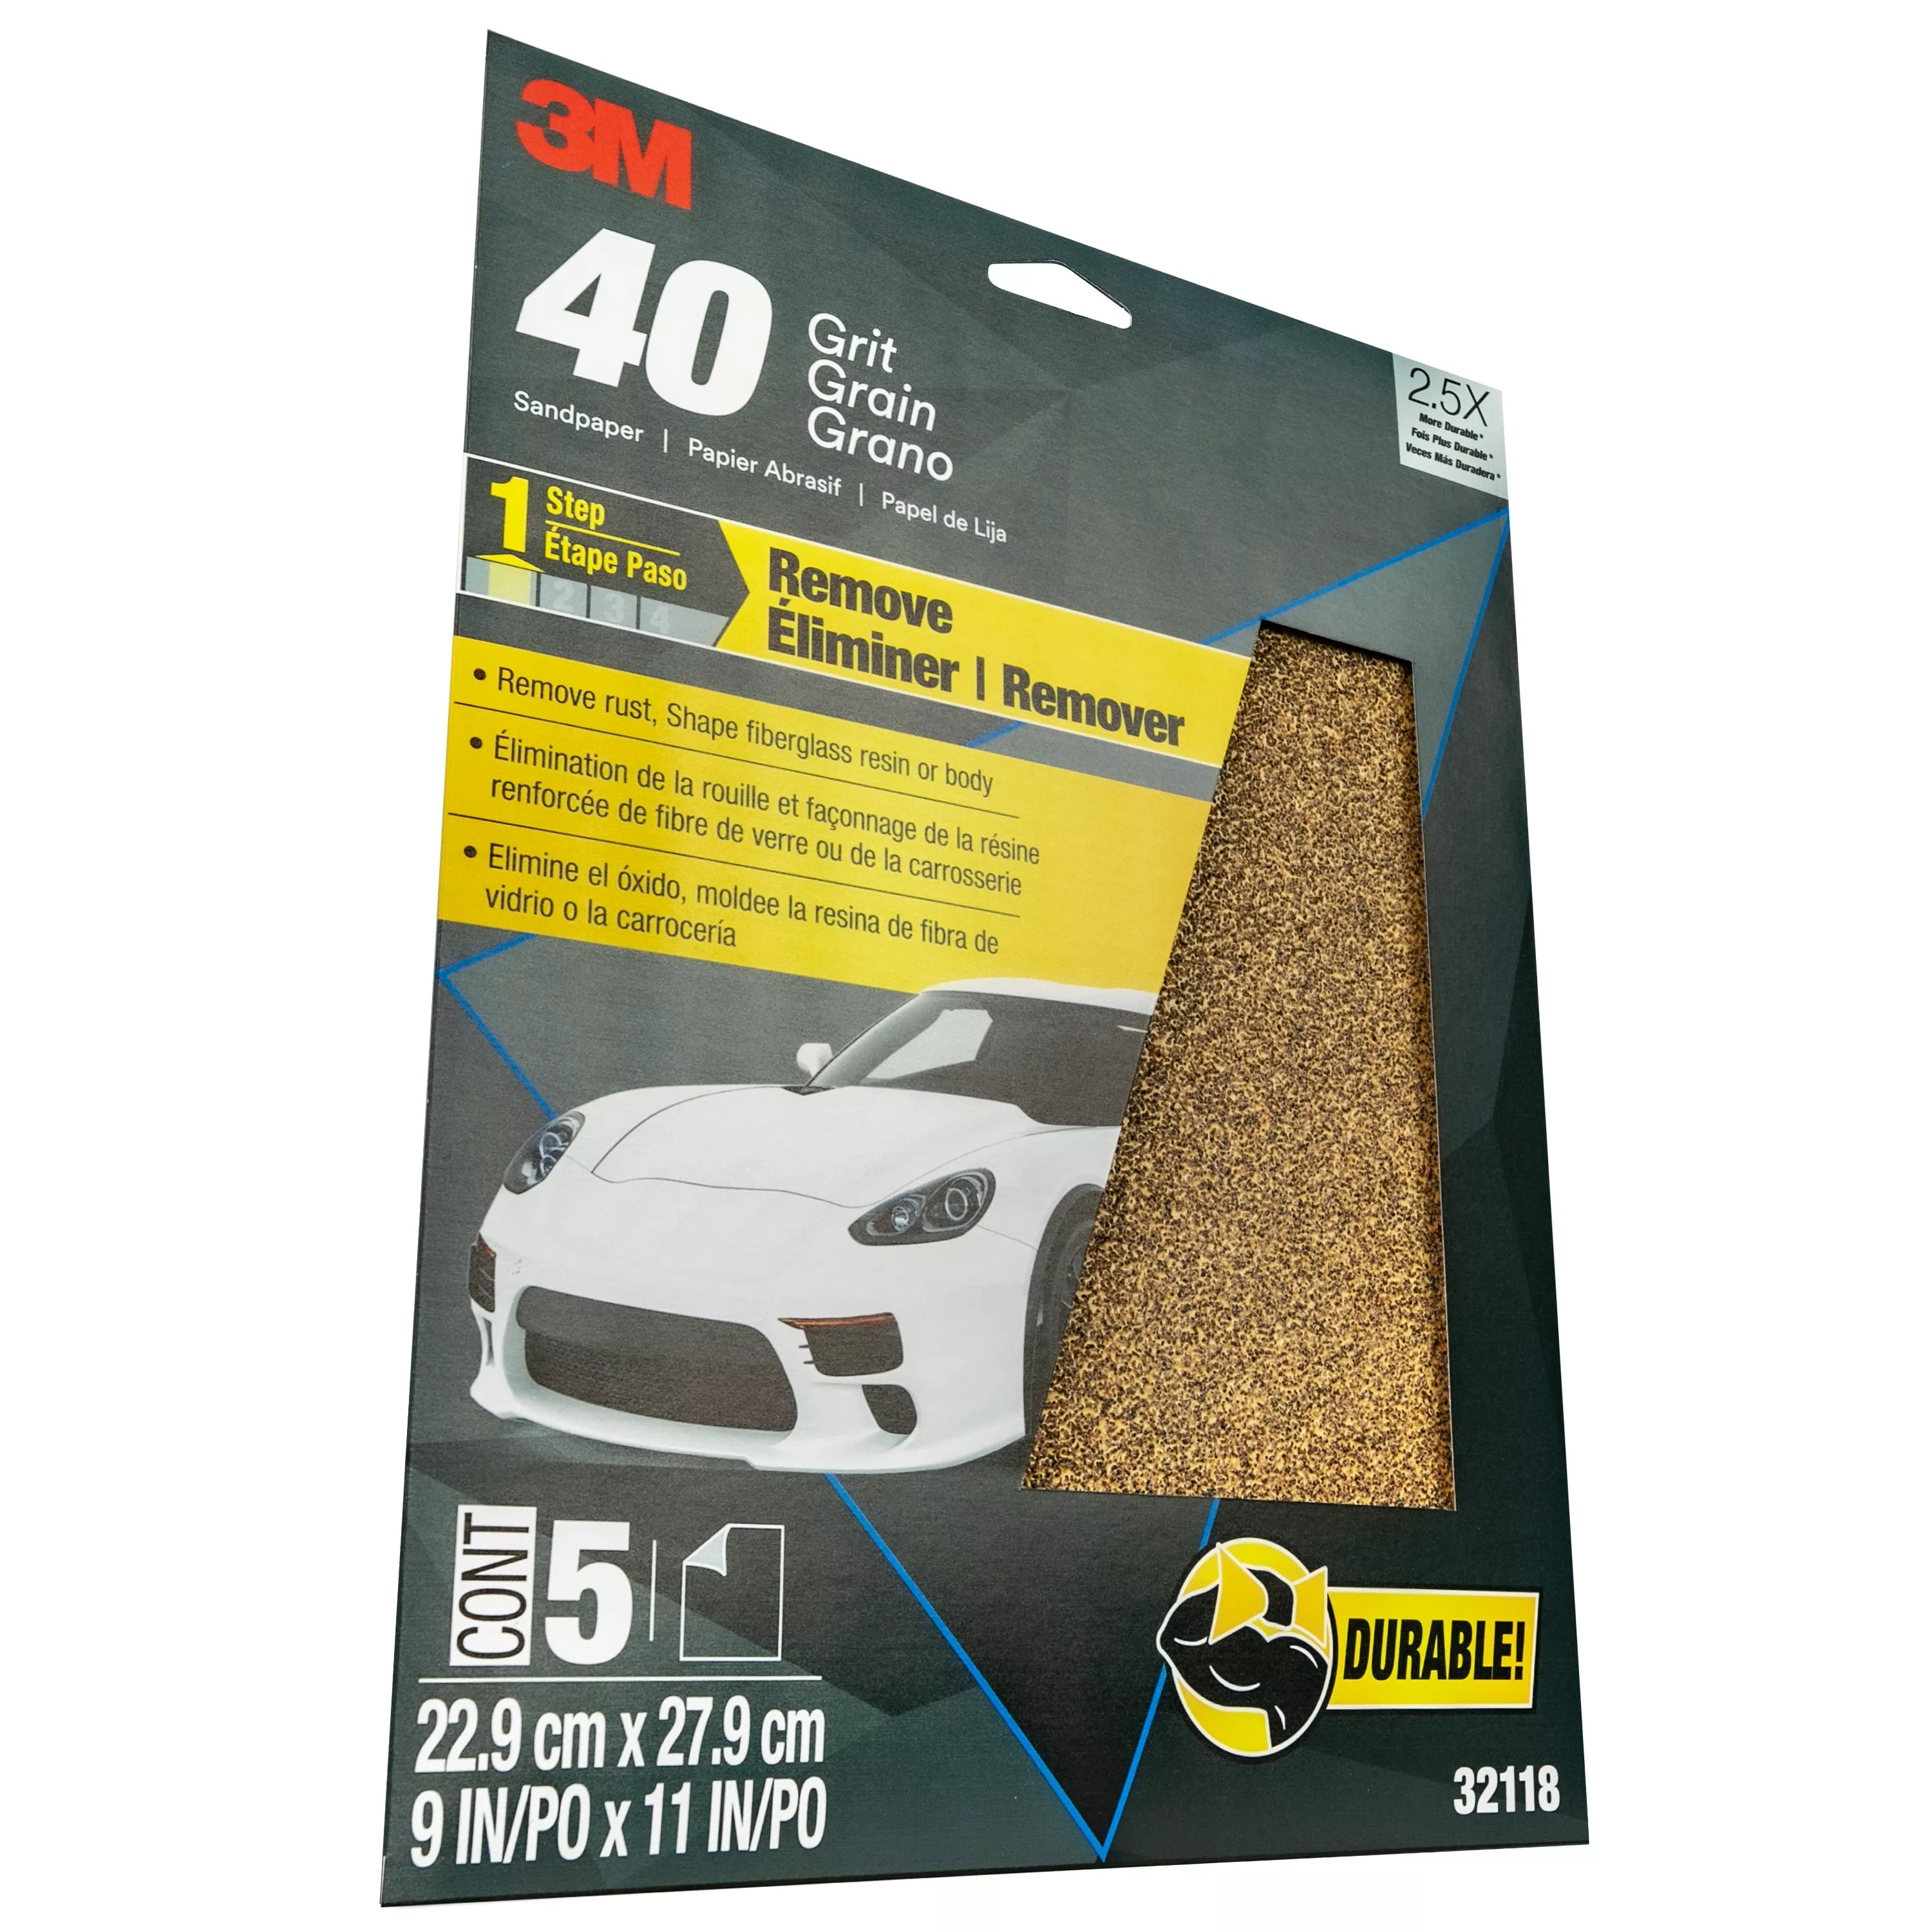 3M™ Sandpaper, 32118, 9 in x 11 in, 40 Grit, 5 sheets per pack, 20 packs
per case